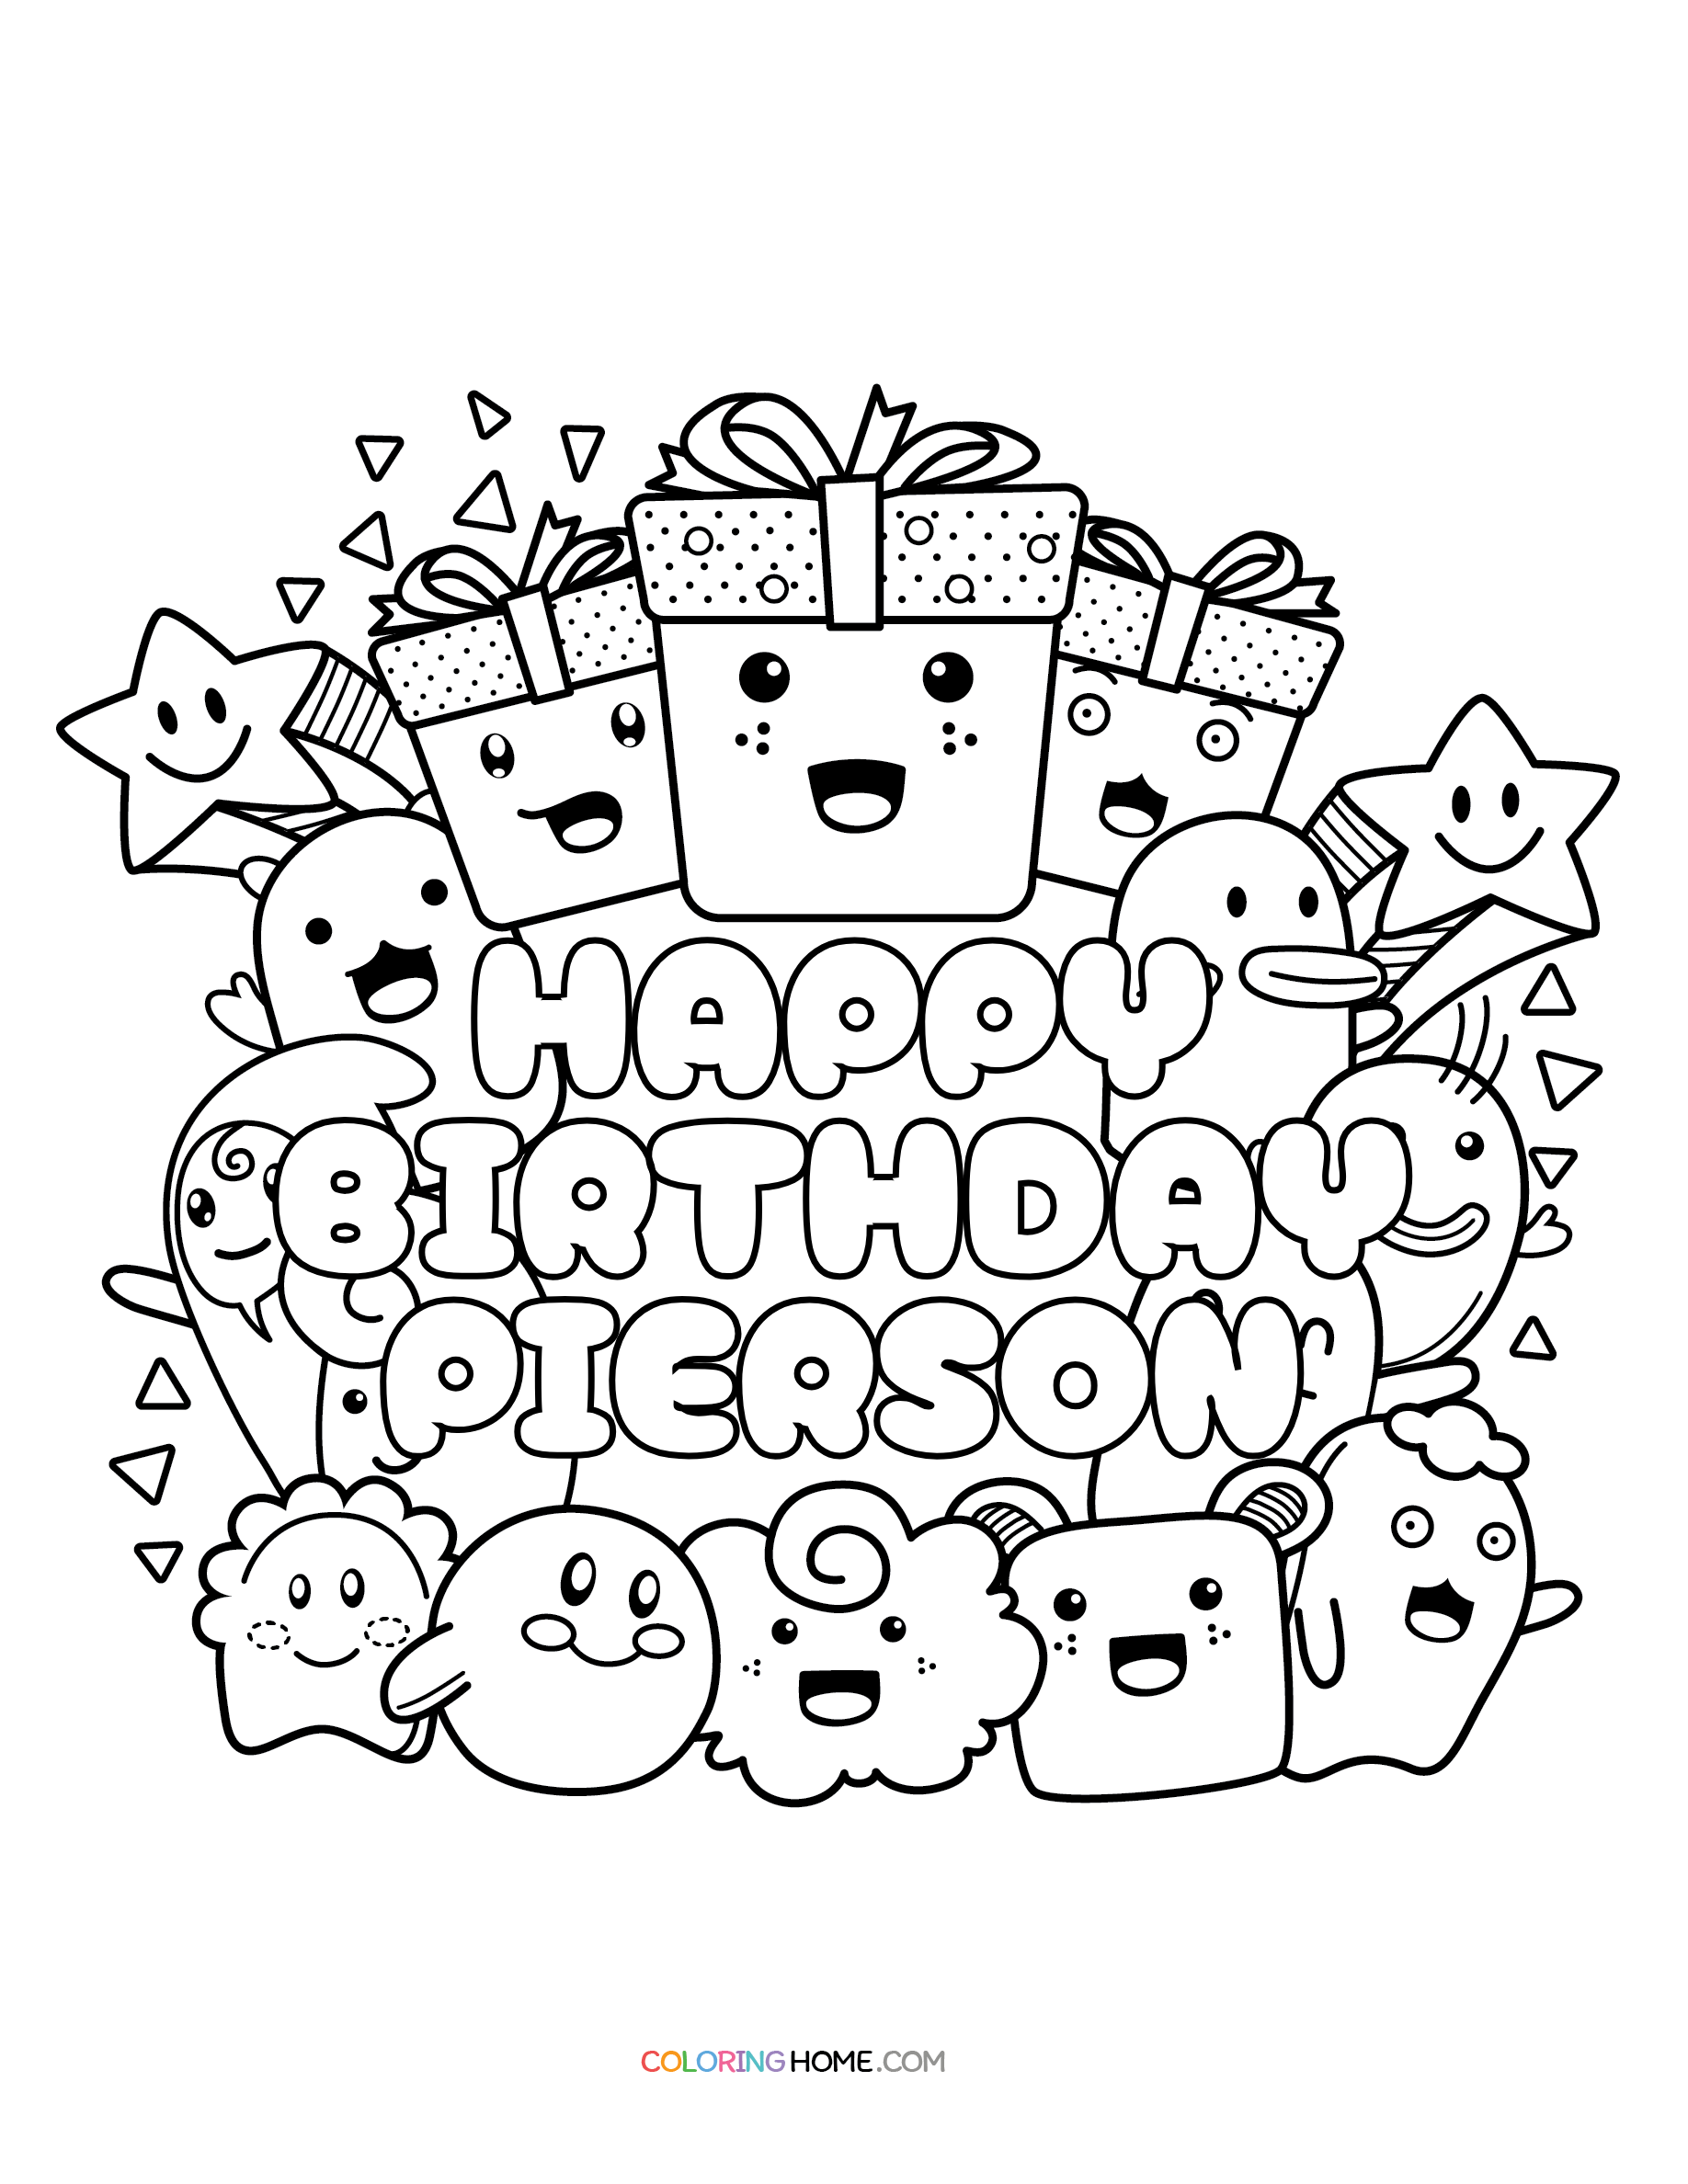 Happy Birthday Pierson coloring page